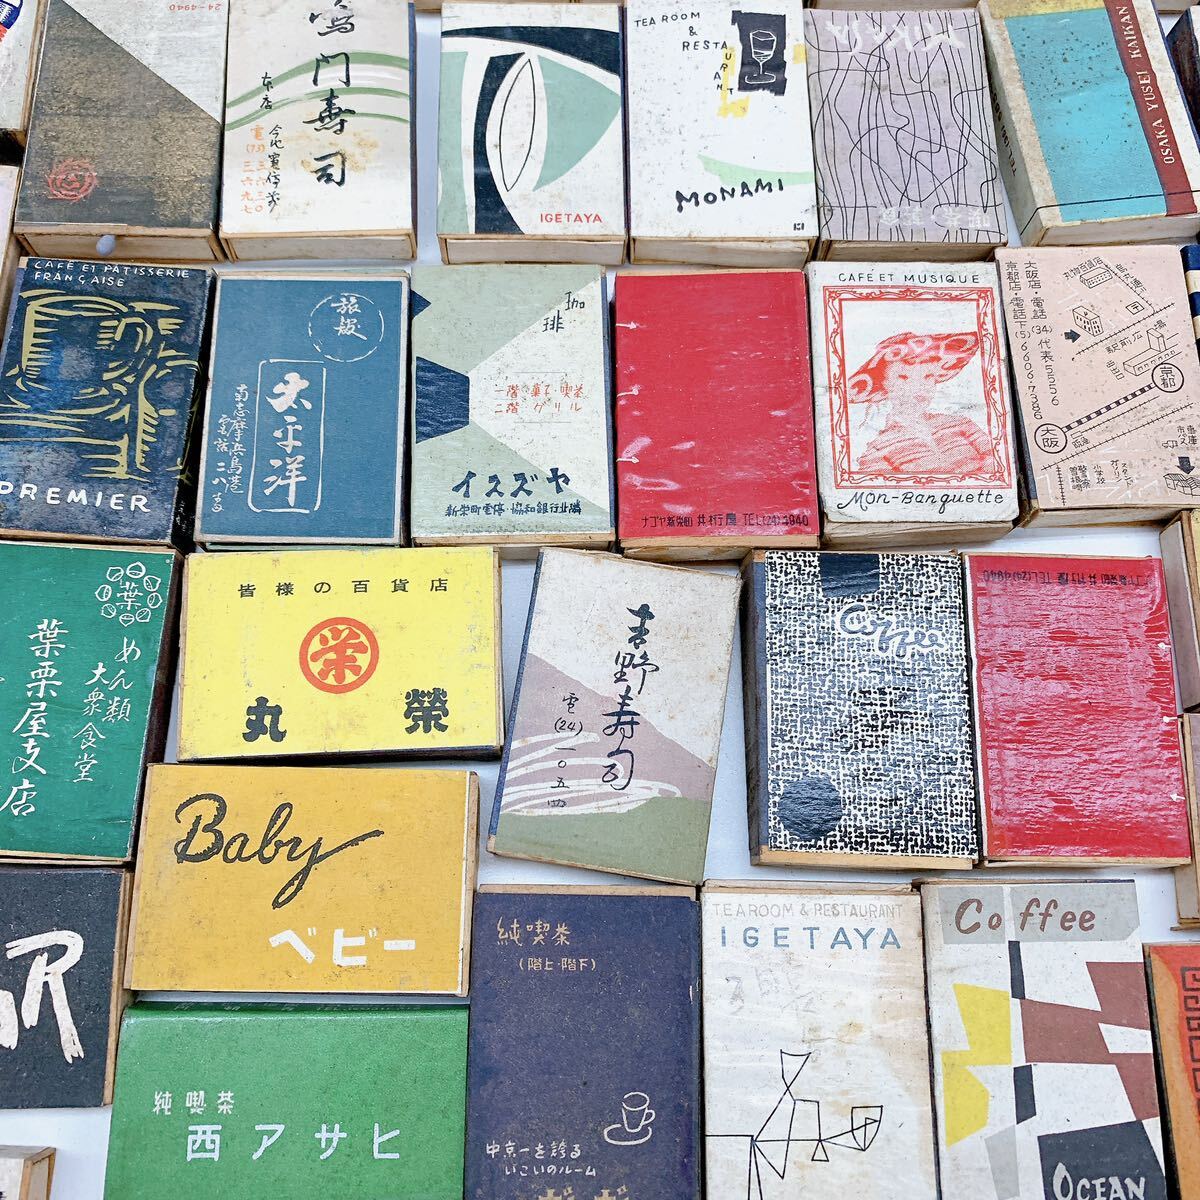 4AB122 1 jpy ~ retro matchbox summarize large amount Showa era label present condition goods 